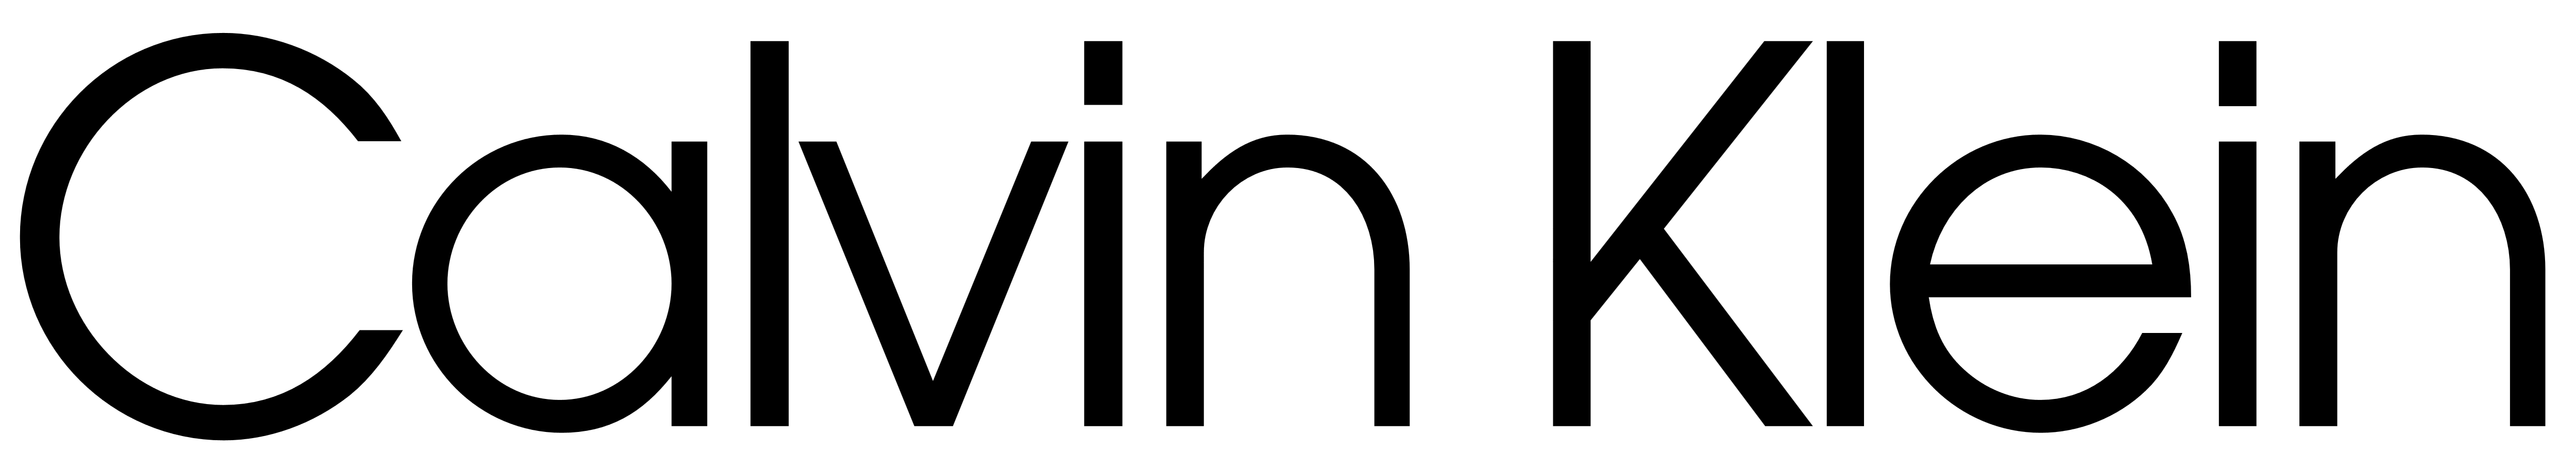 Calvin Klein logo PNG высококачественный образ